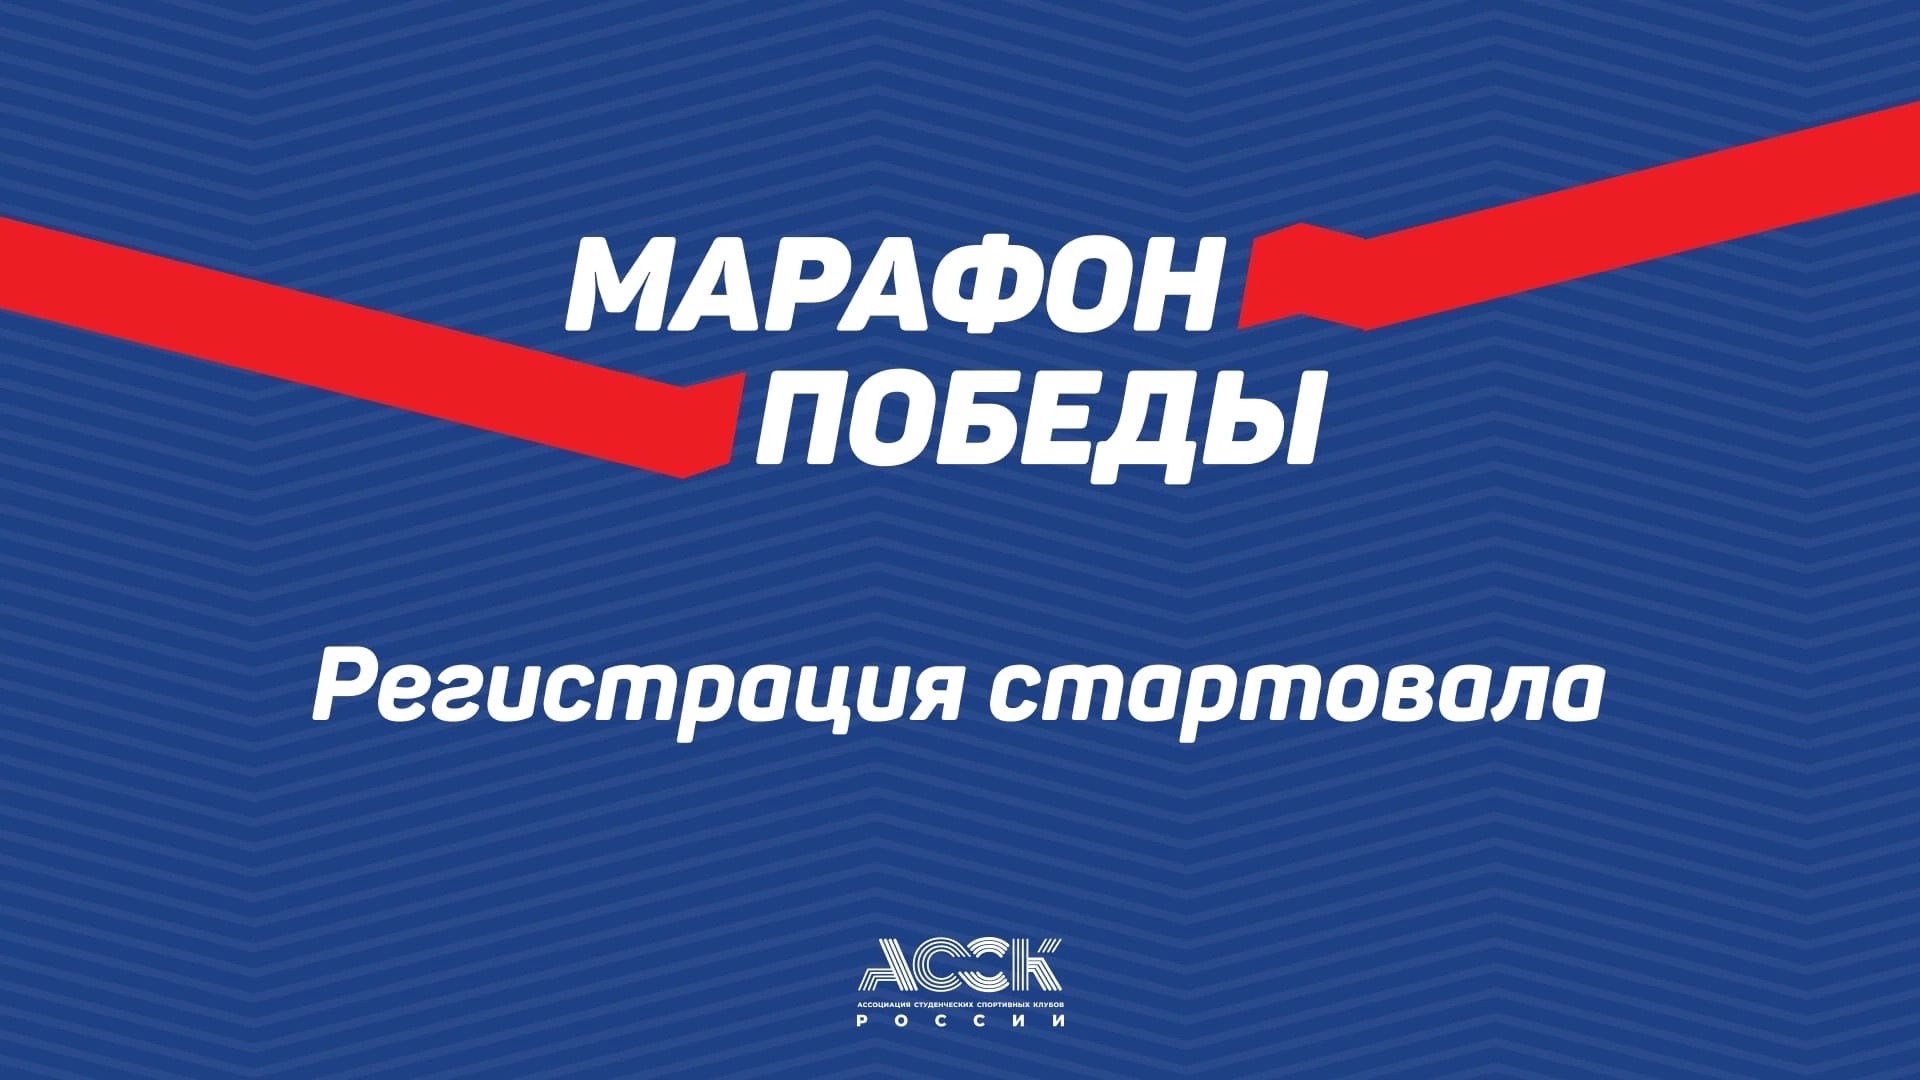 Стартует Всероссийская спортивная акция Марафон Победы в честь празднования Дня Победы 